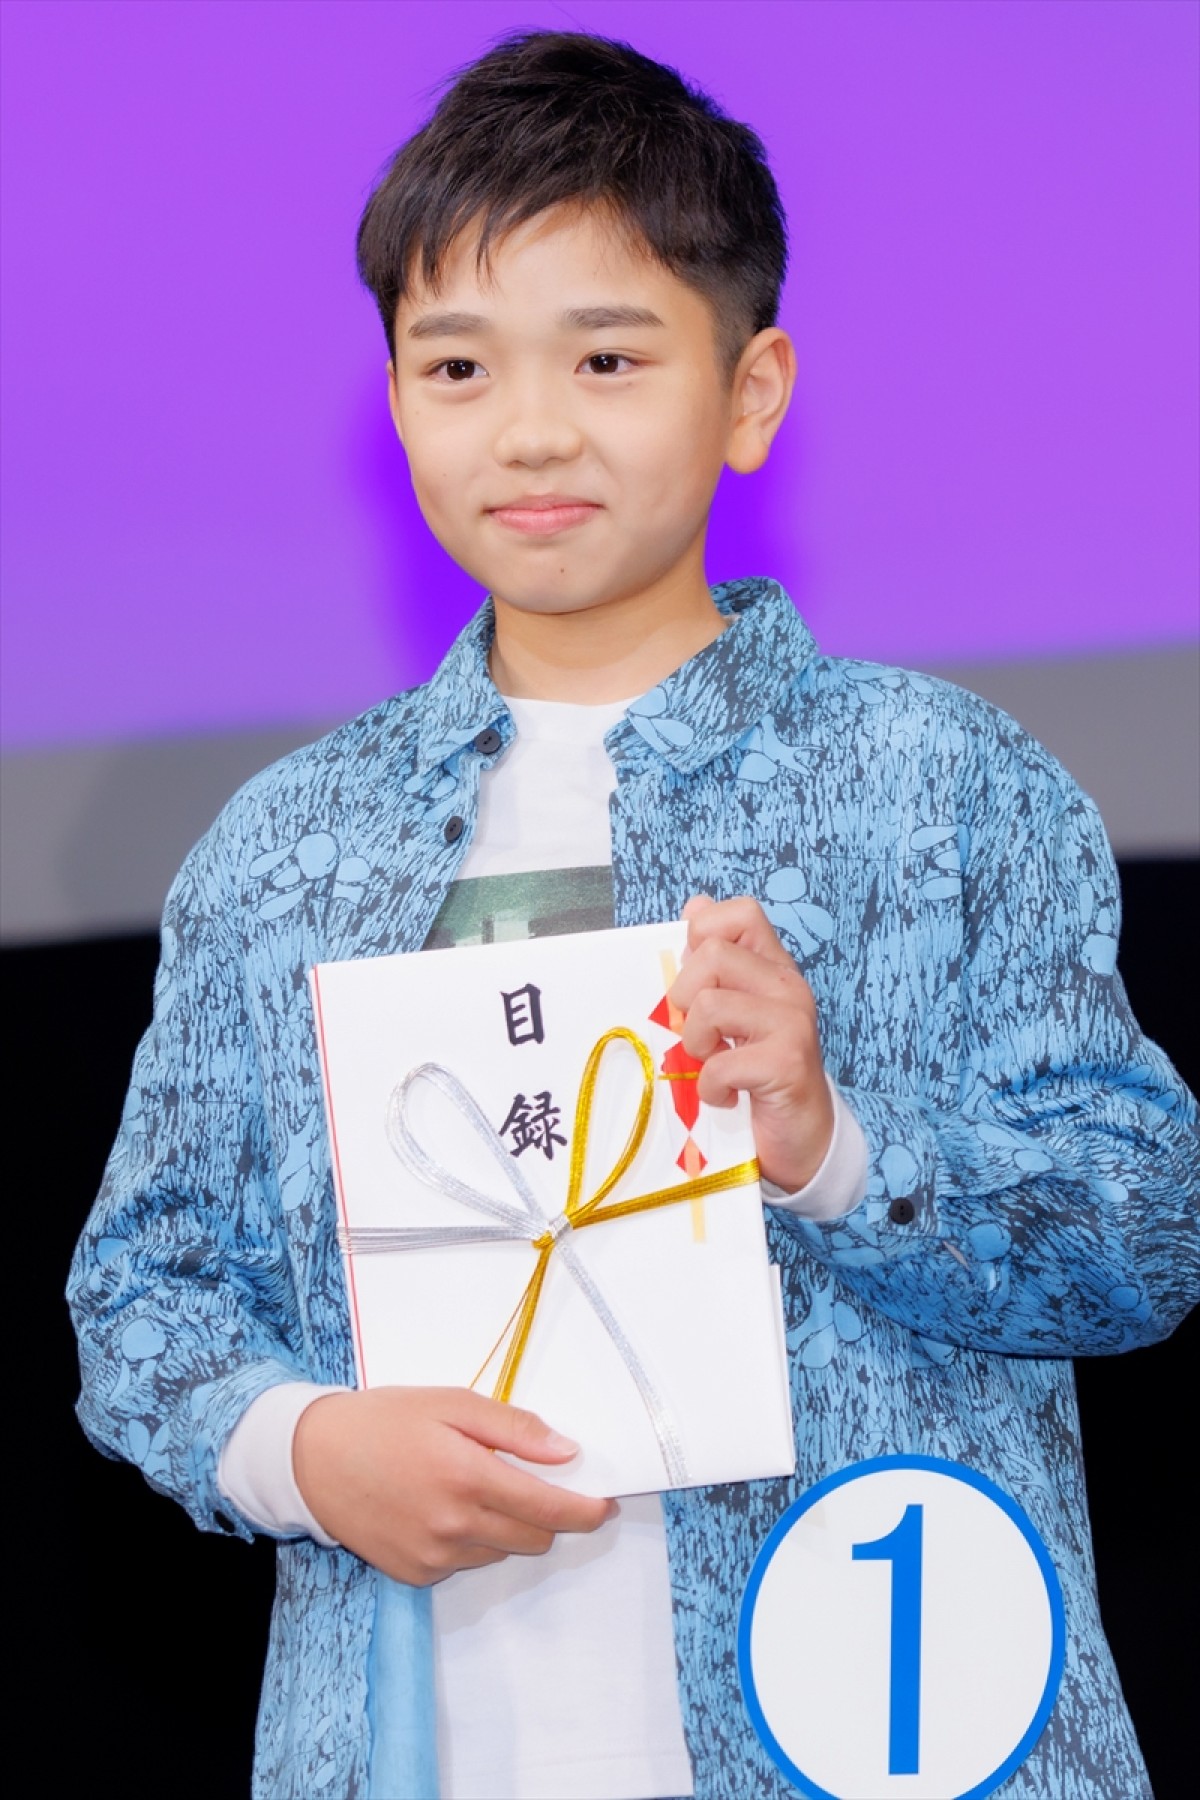 「TOHO NEW FACE」グランプリに“空手世界チャンピオン”の11歳・小谷興会さん